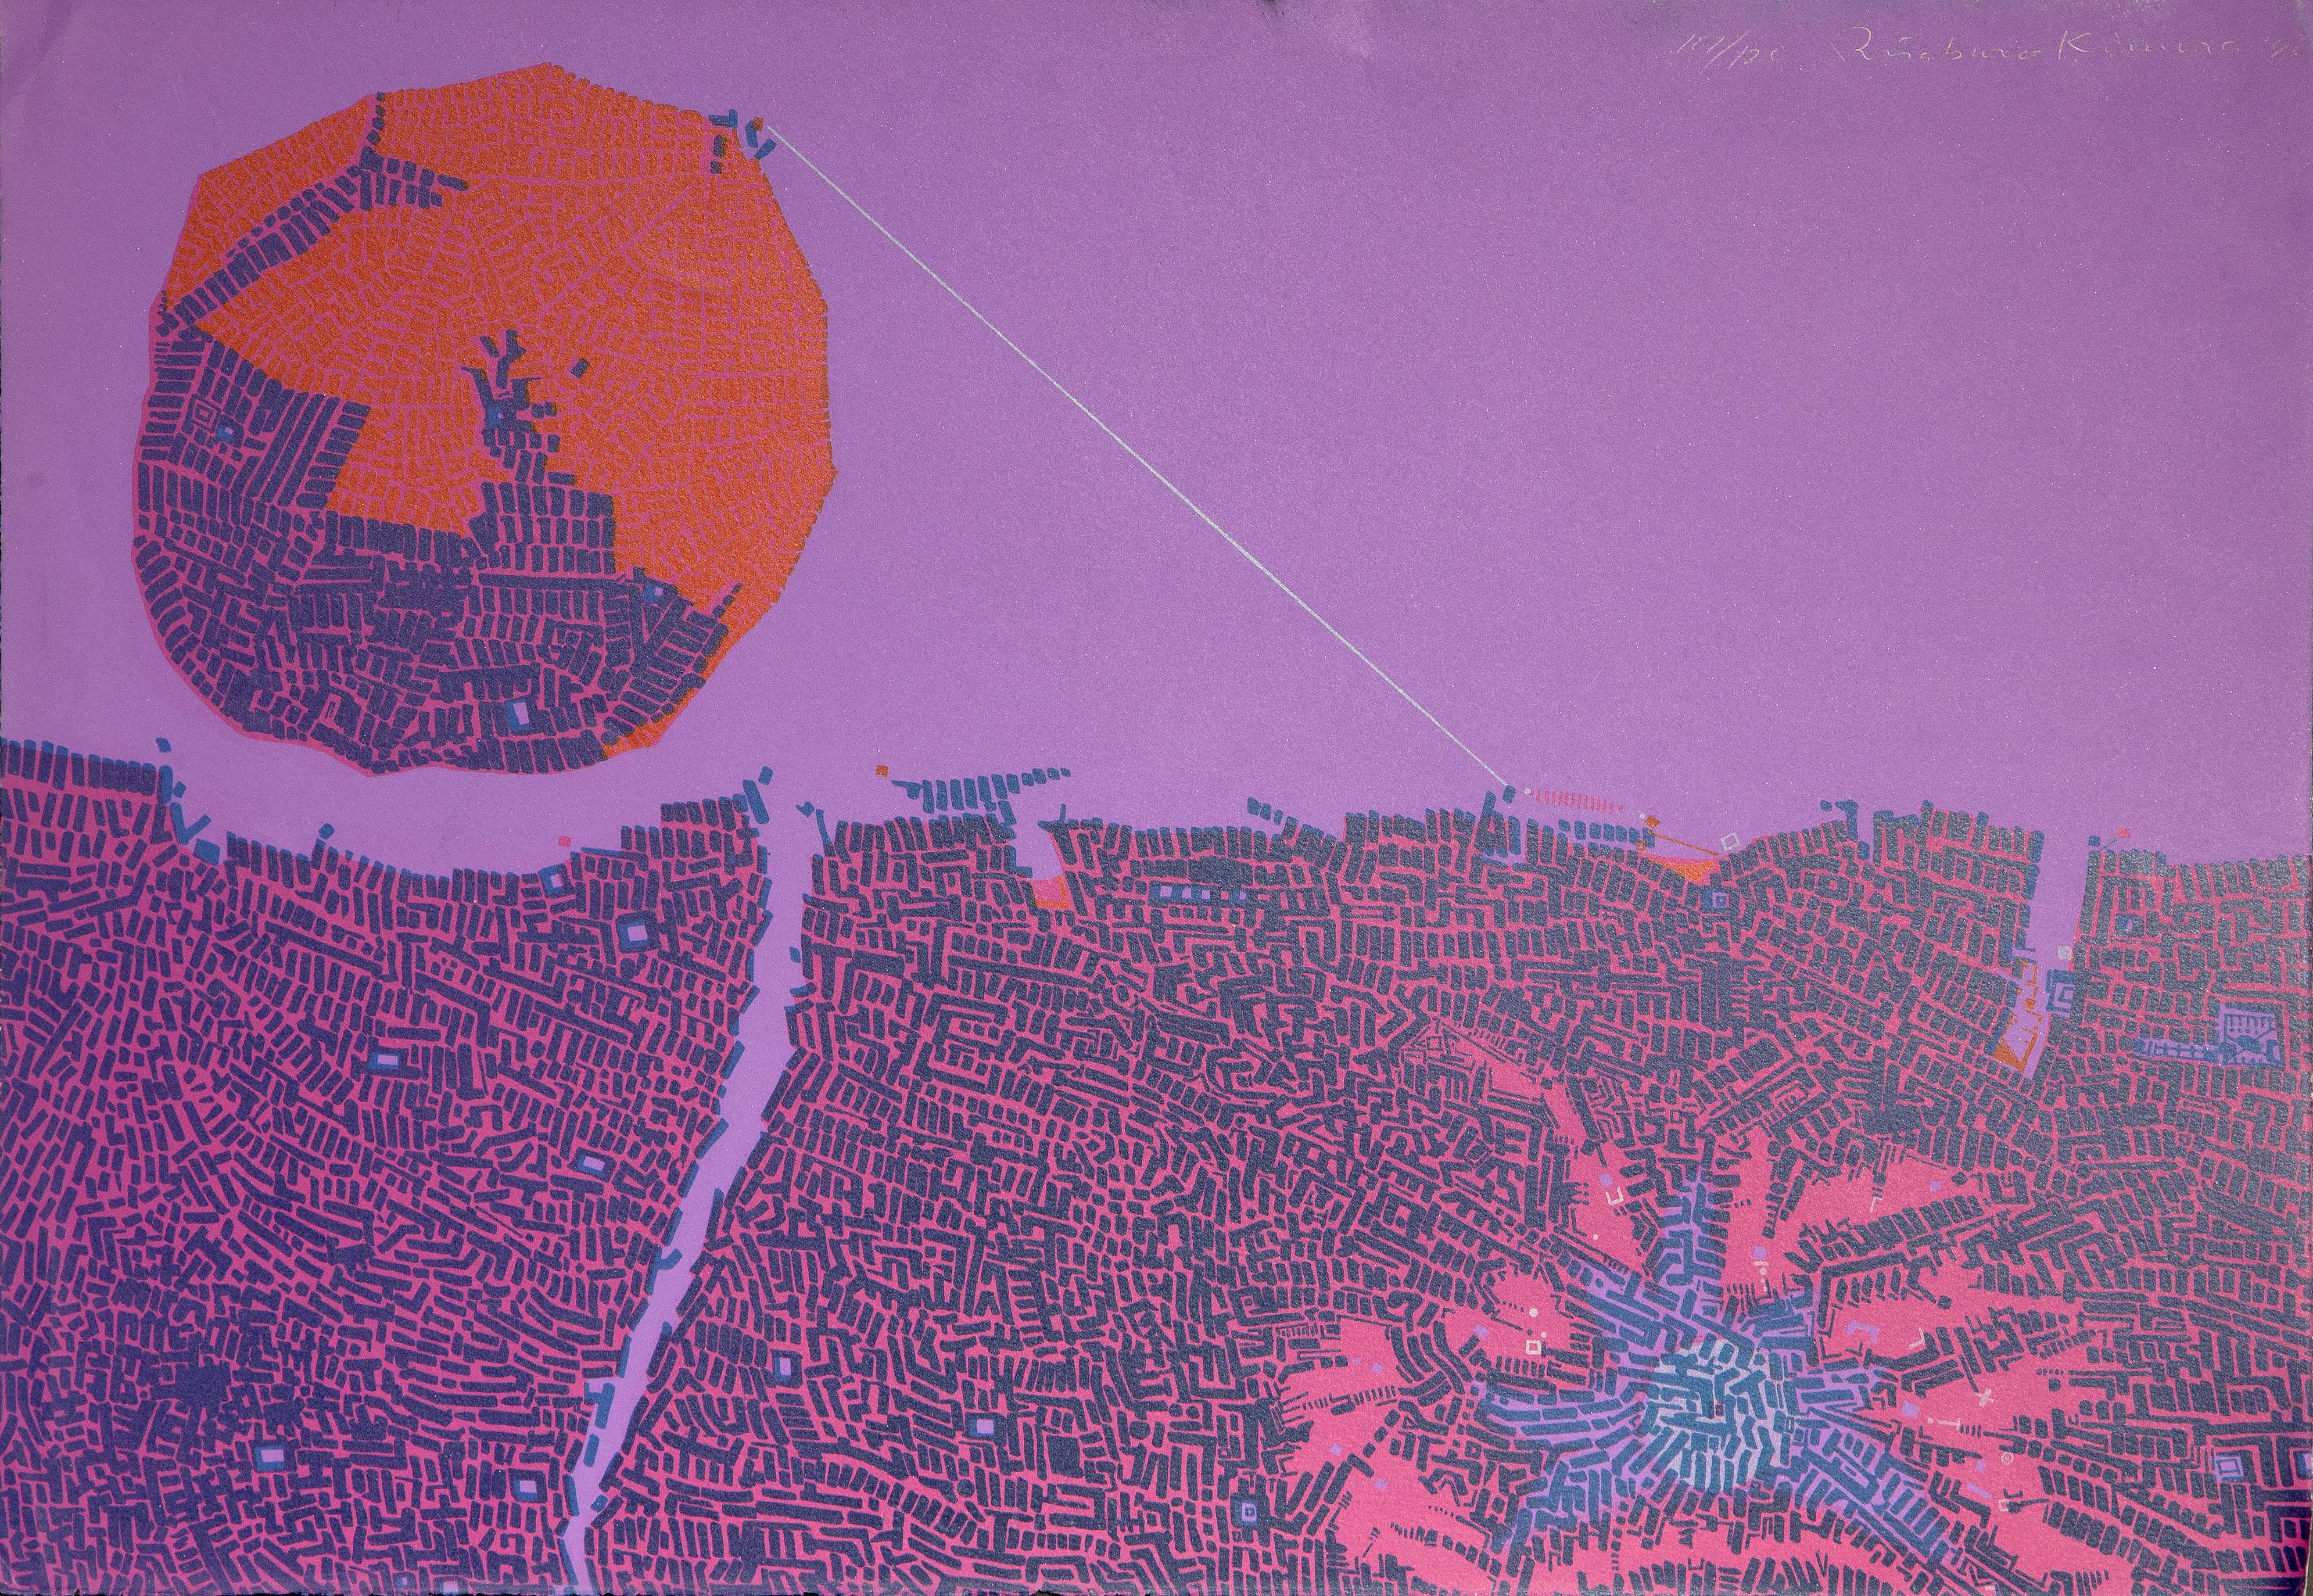 Nachtstadt
Risaburo Kimura, Japaner (1924-2014)
Datum: 1970
Siebdruck, signiert, nummeriert und datiert mit Bleistift
Auflage von 107/120
Größe: 18,5 x 26,5 Zoll (46,99 x 67,31 cm)